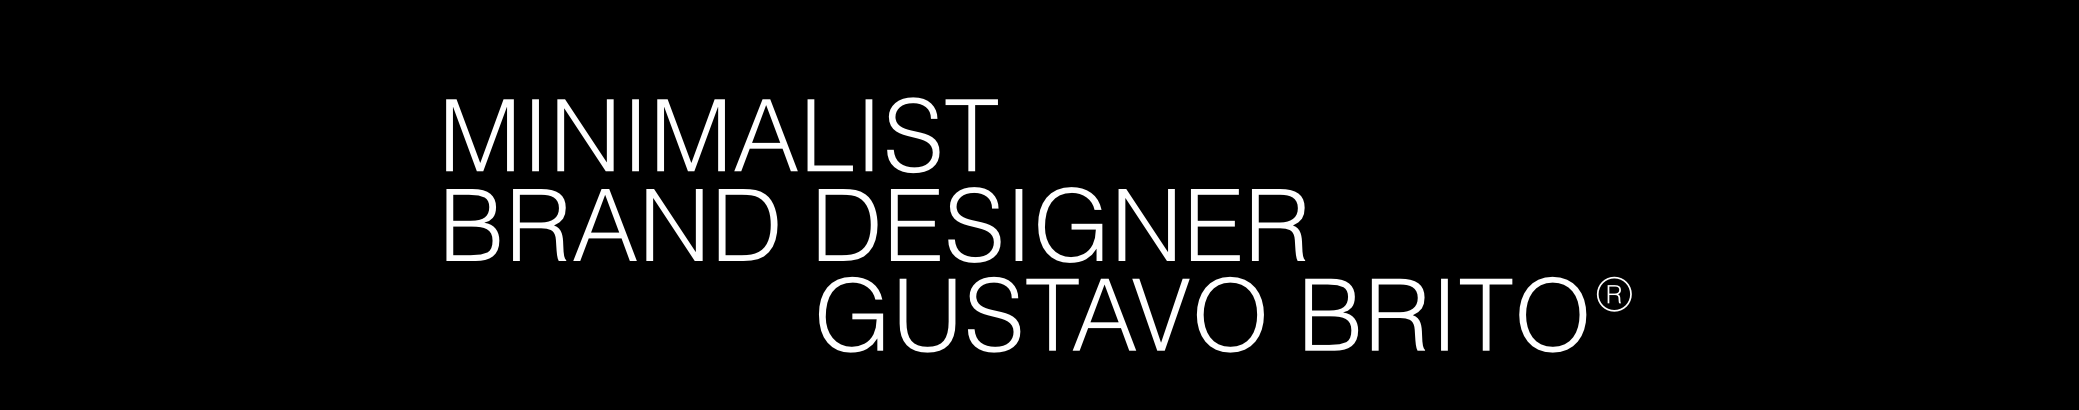 Gustavo Brito®'s profile banner